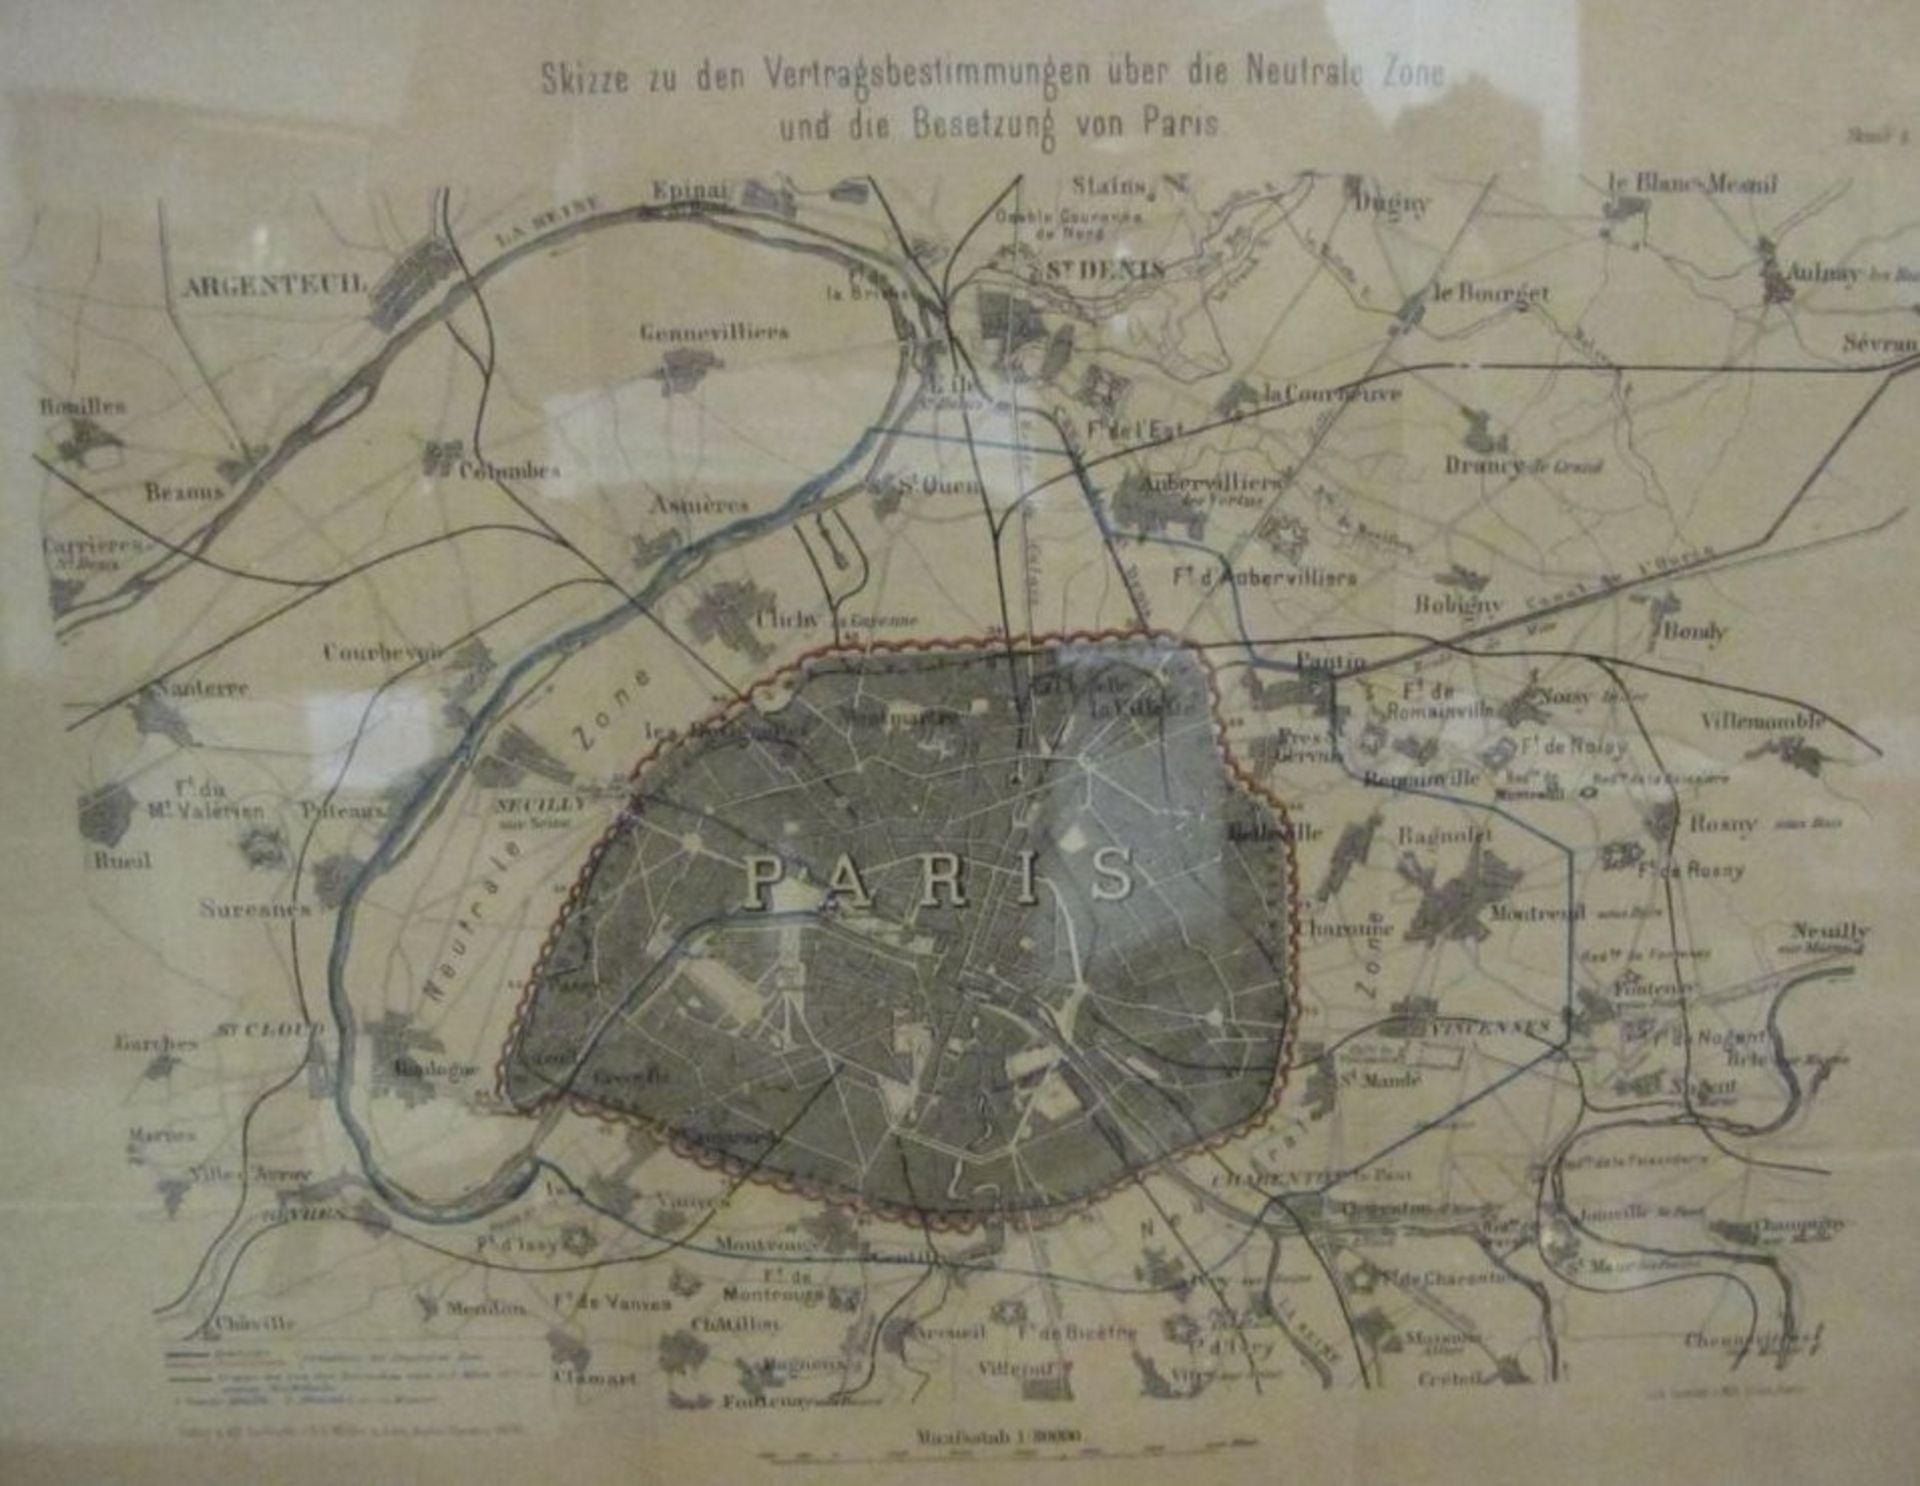 Kartenstich "Skizze zu den Vertragsbestimmungen über die Neurale Zone und die Besetzung von Paris",,